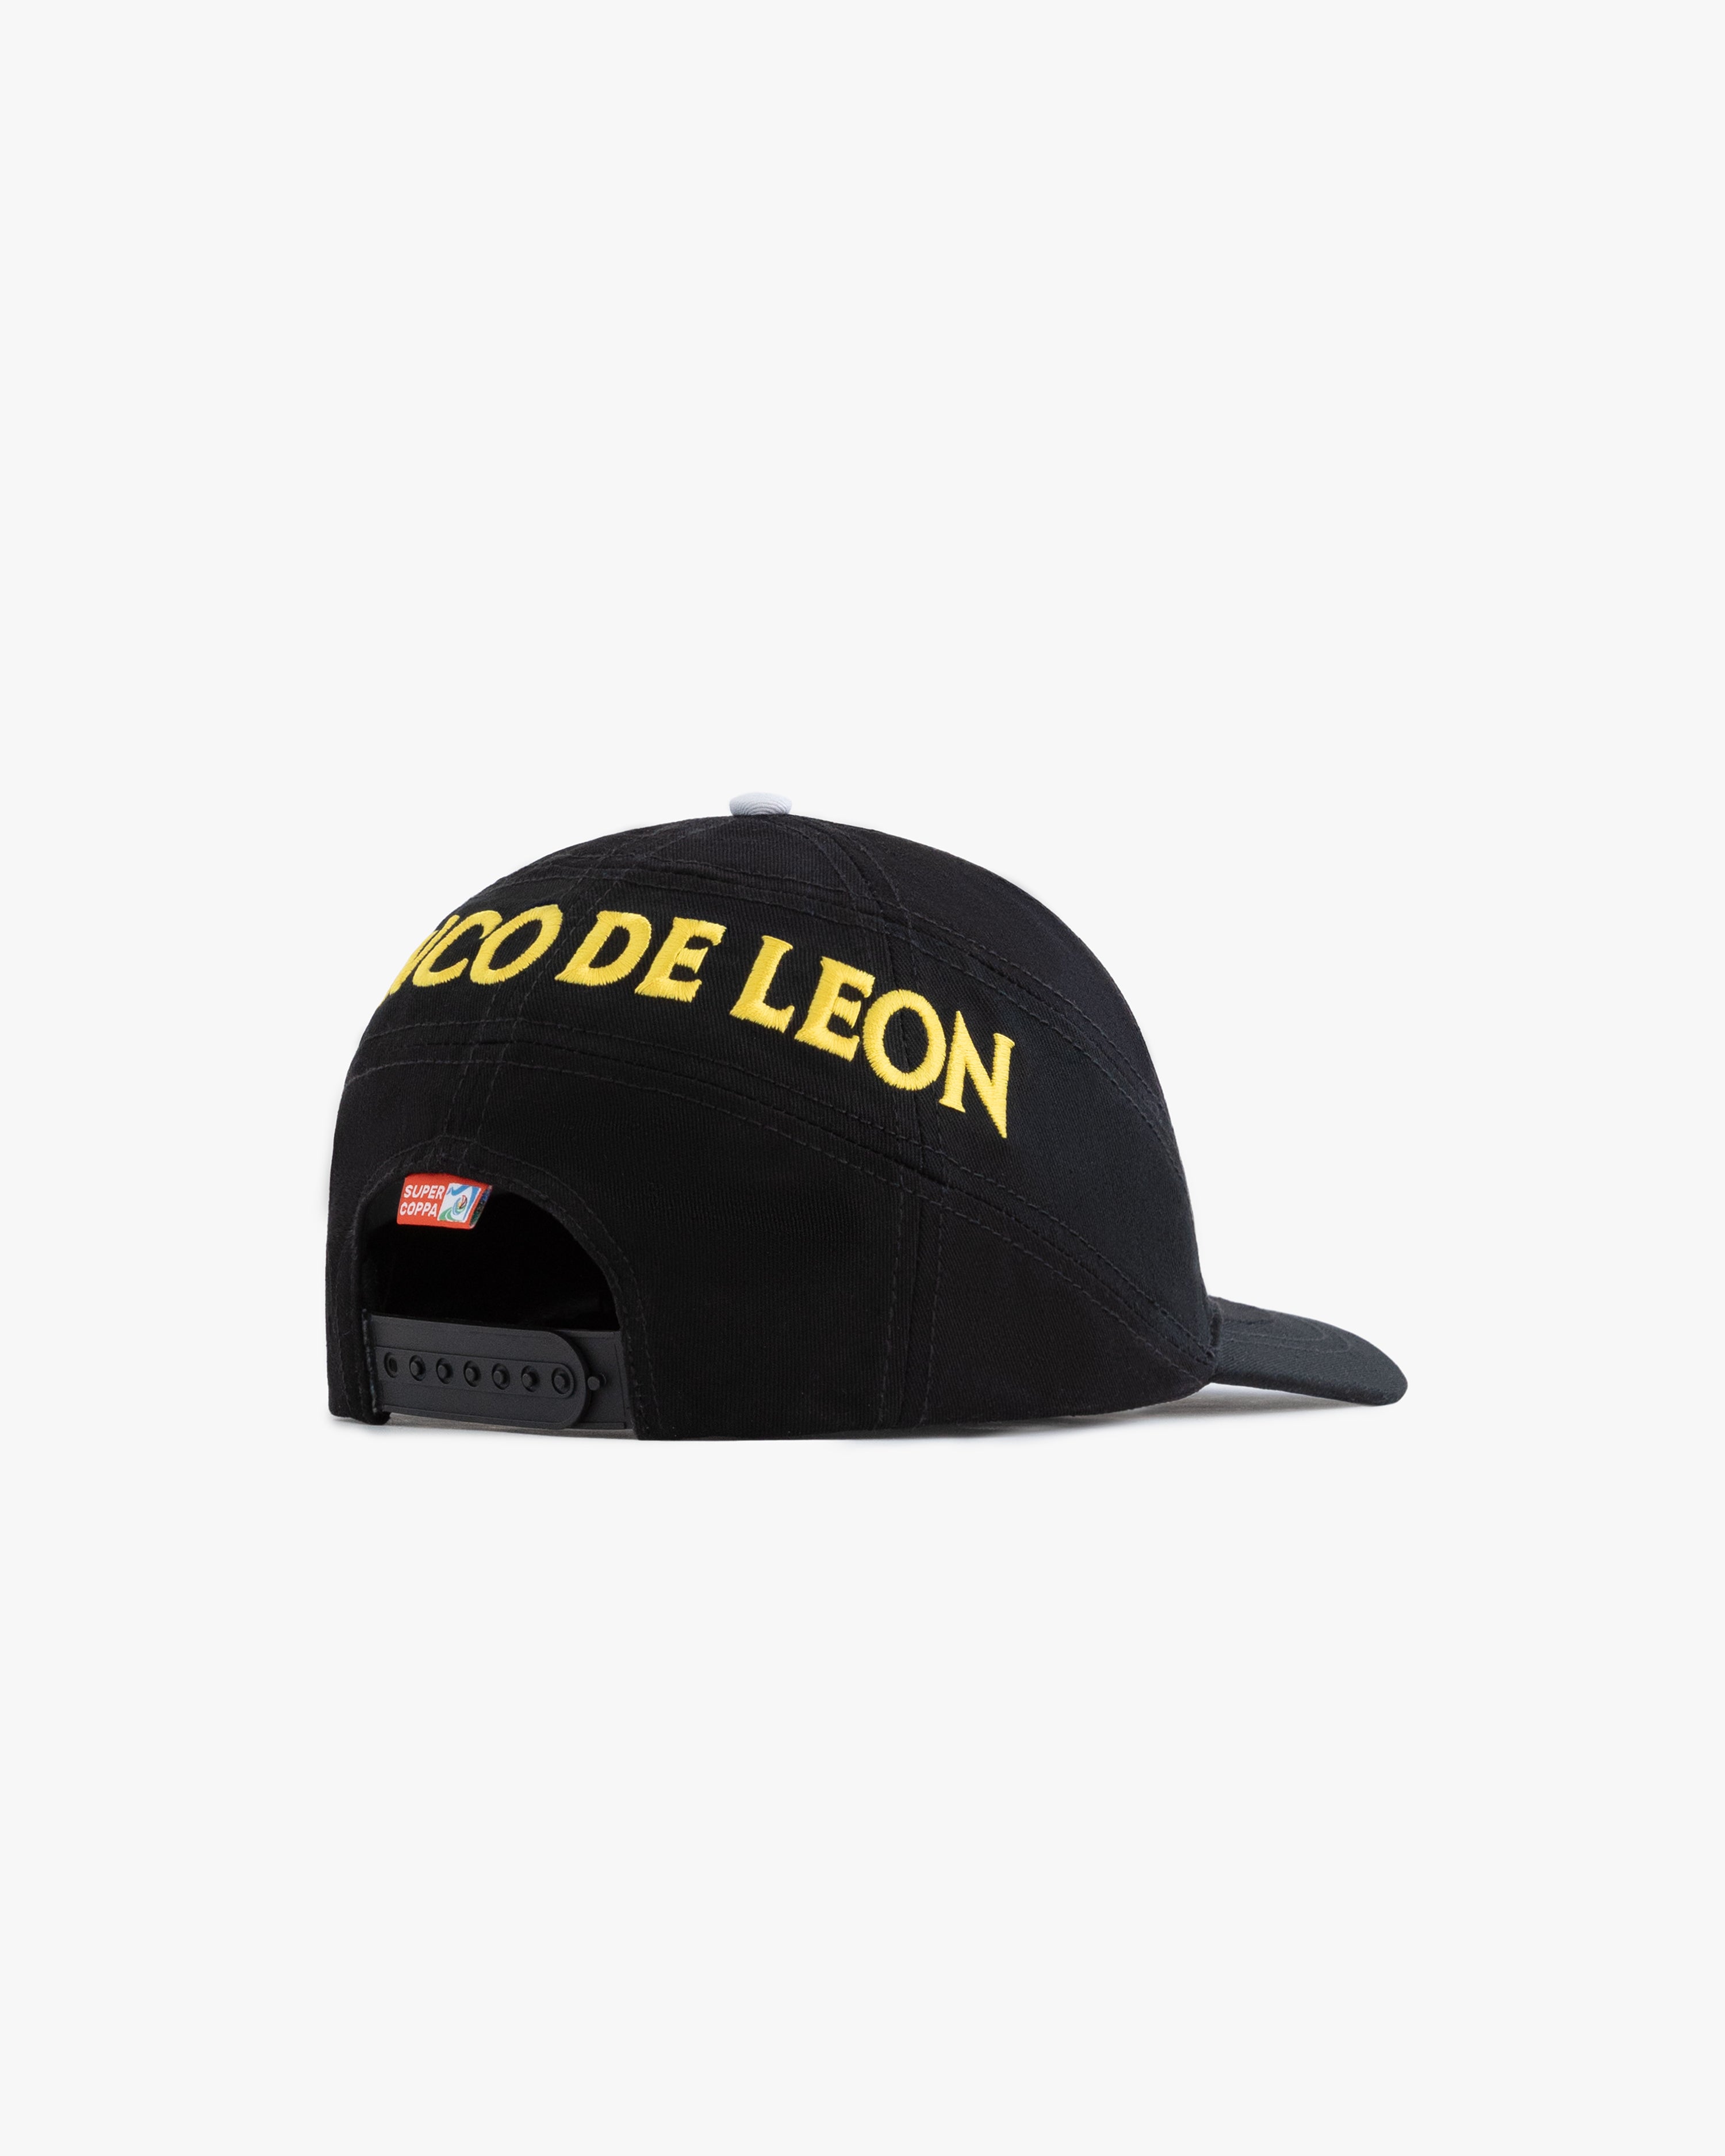 Team Leon Soccer Hat